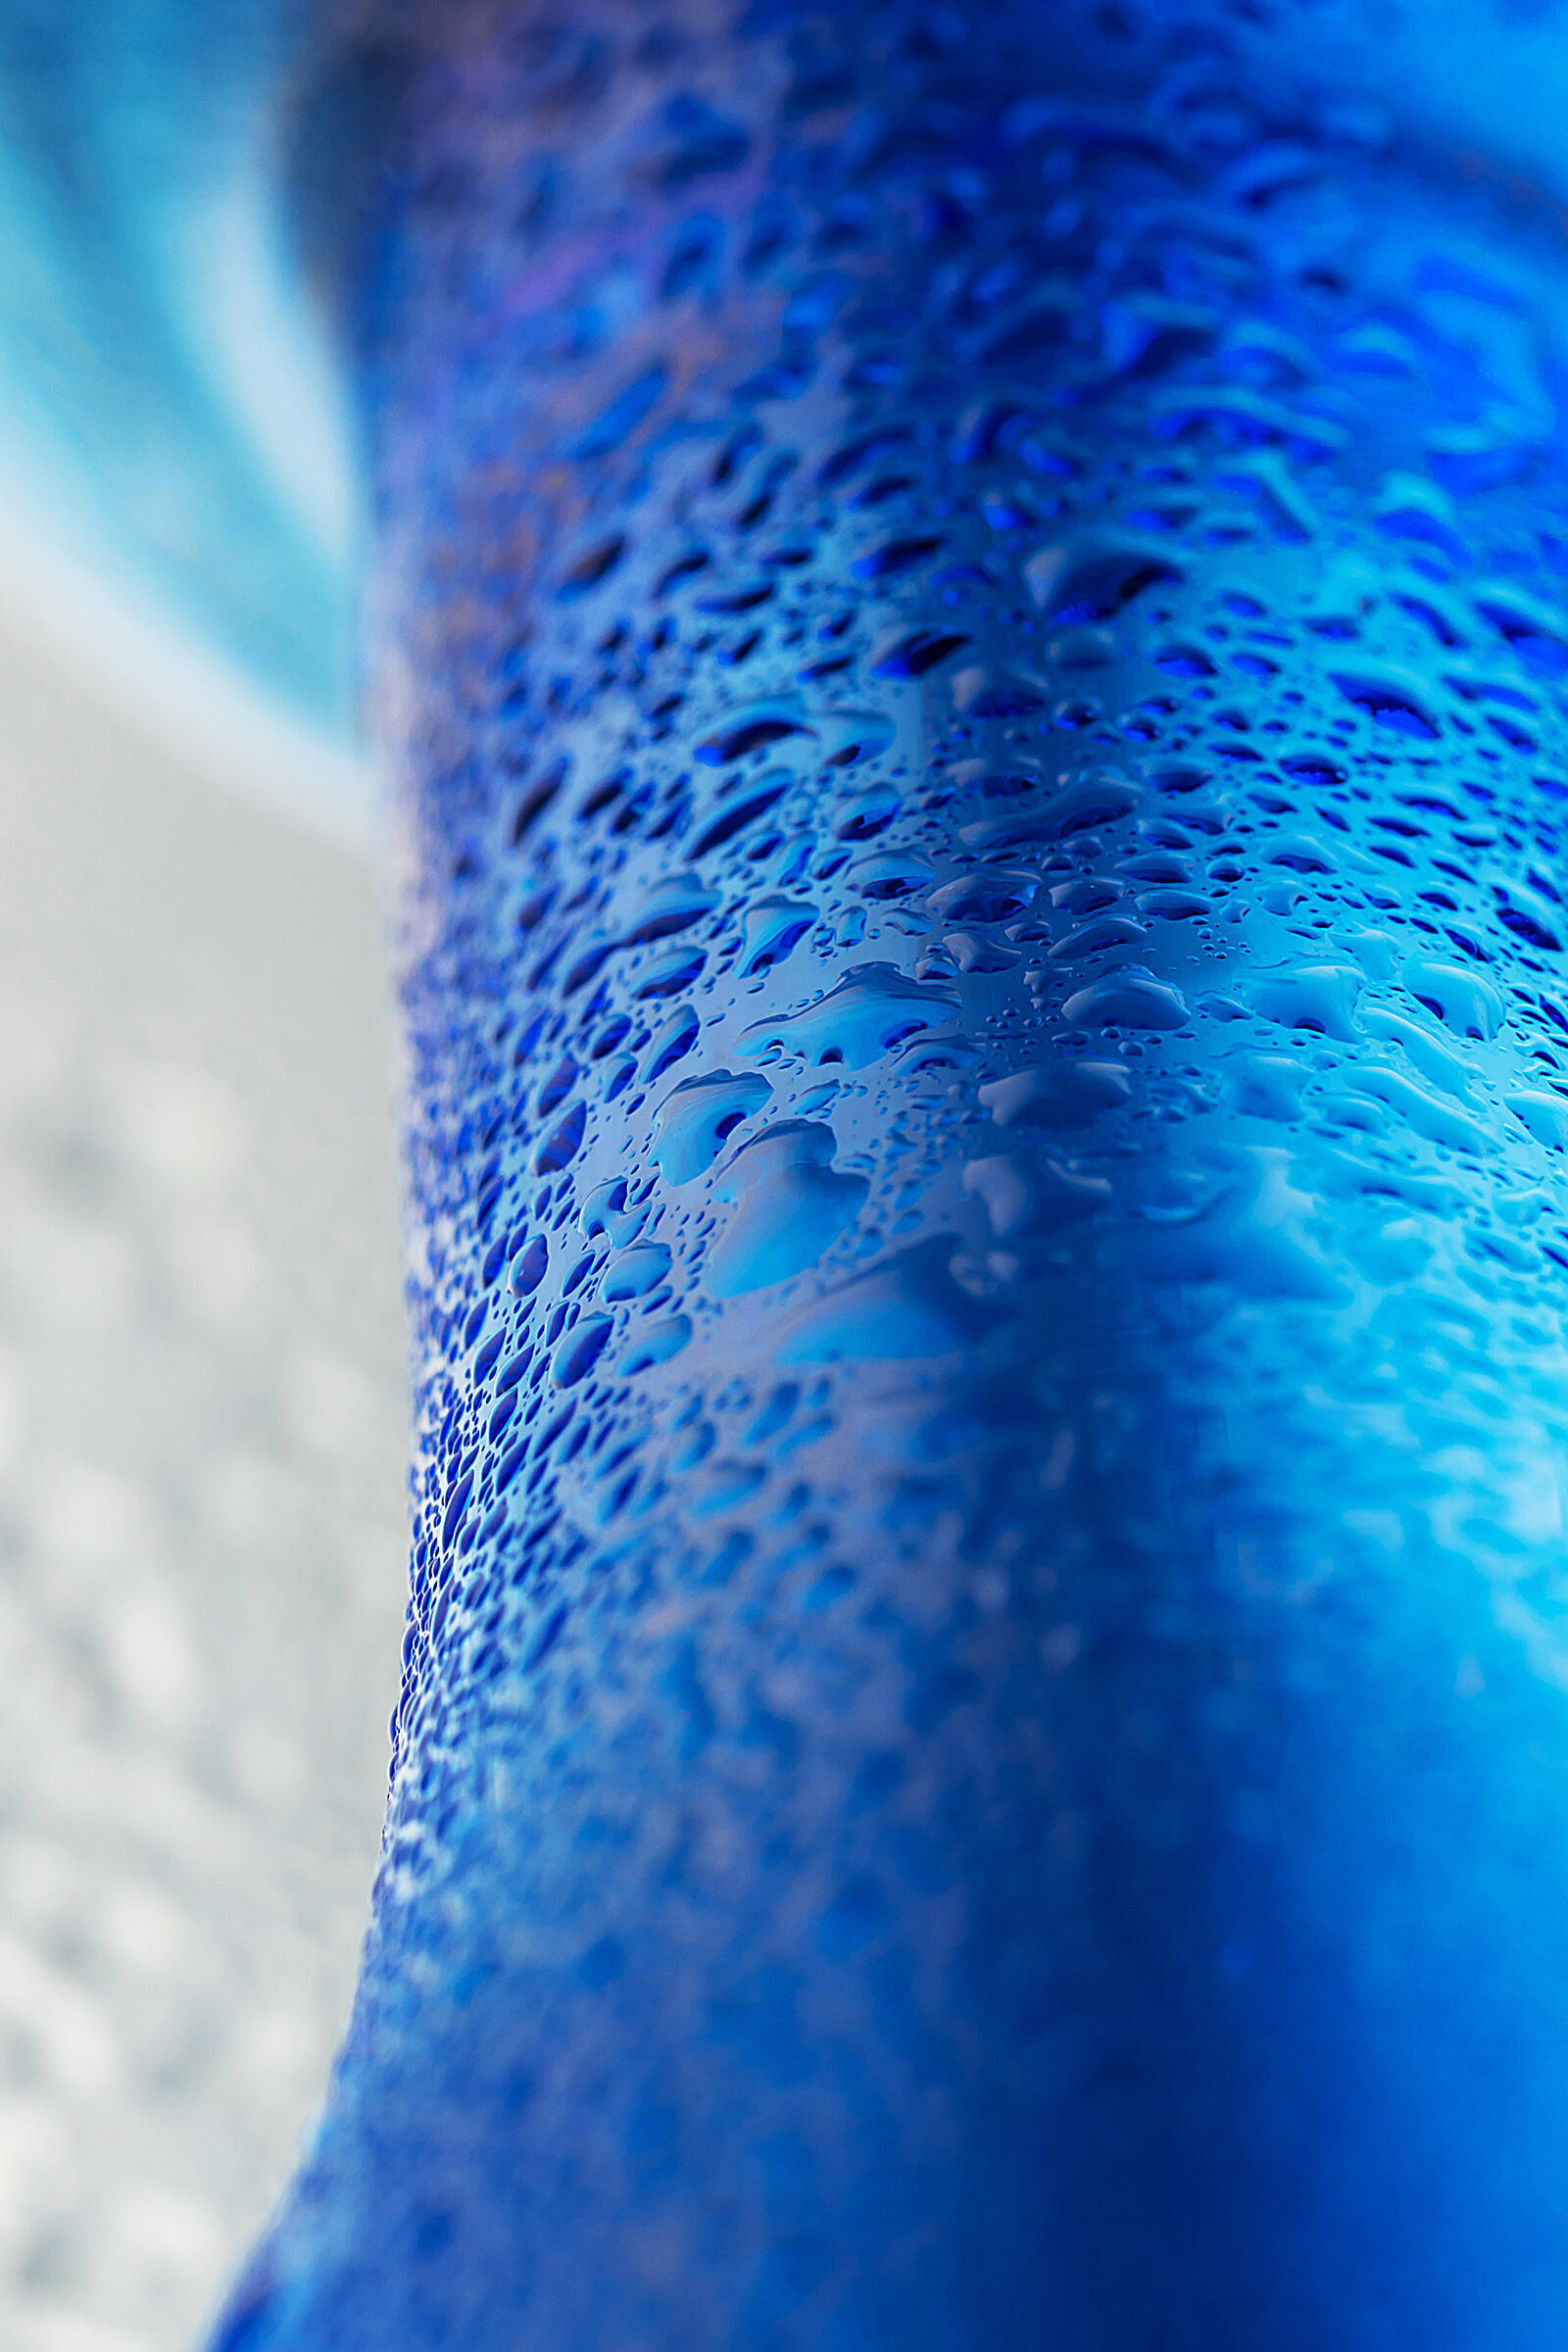 Анальный фаллоимитатор Sexus Glass, синий, 13 см